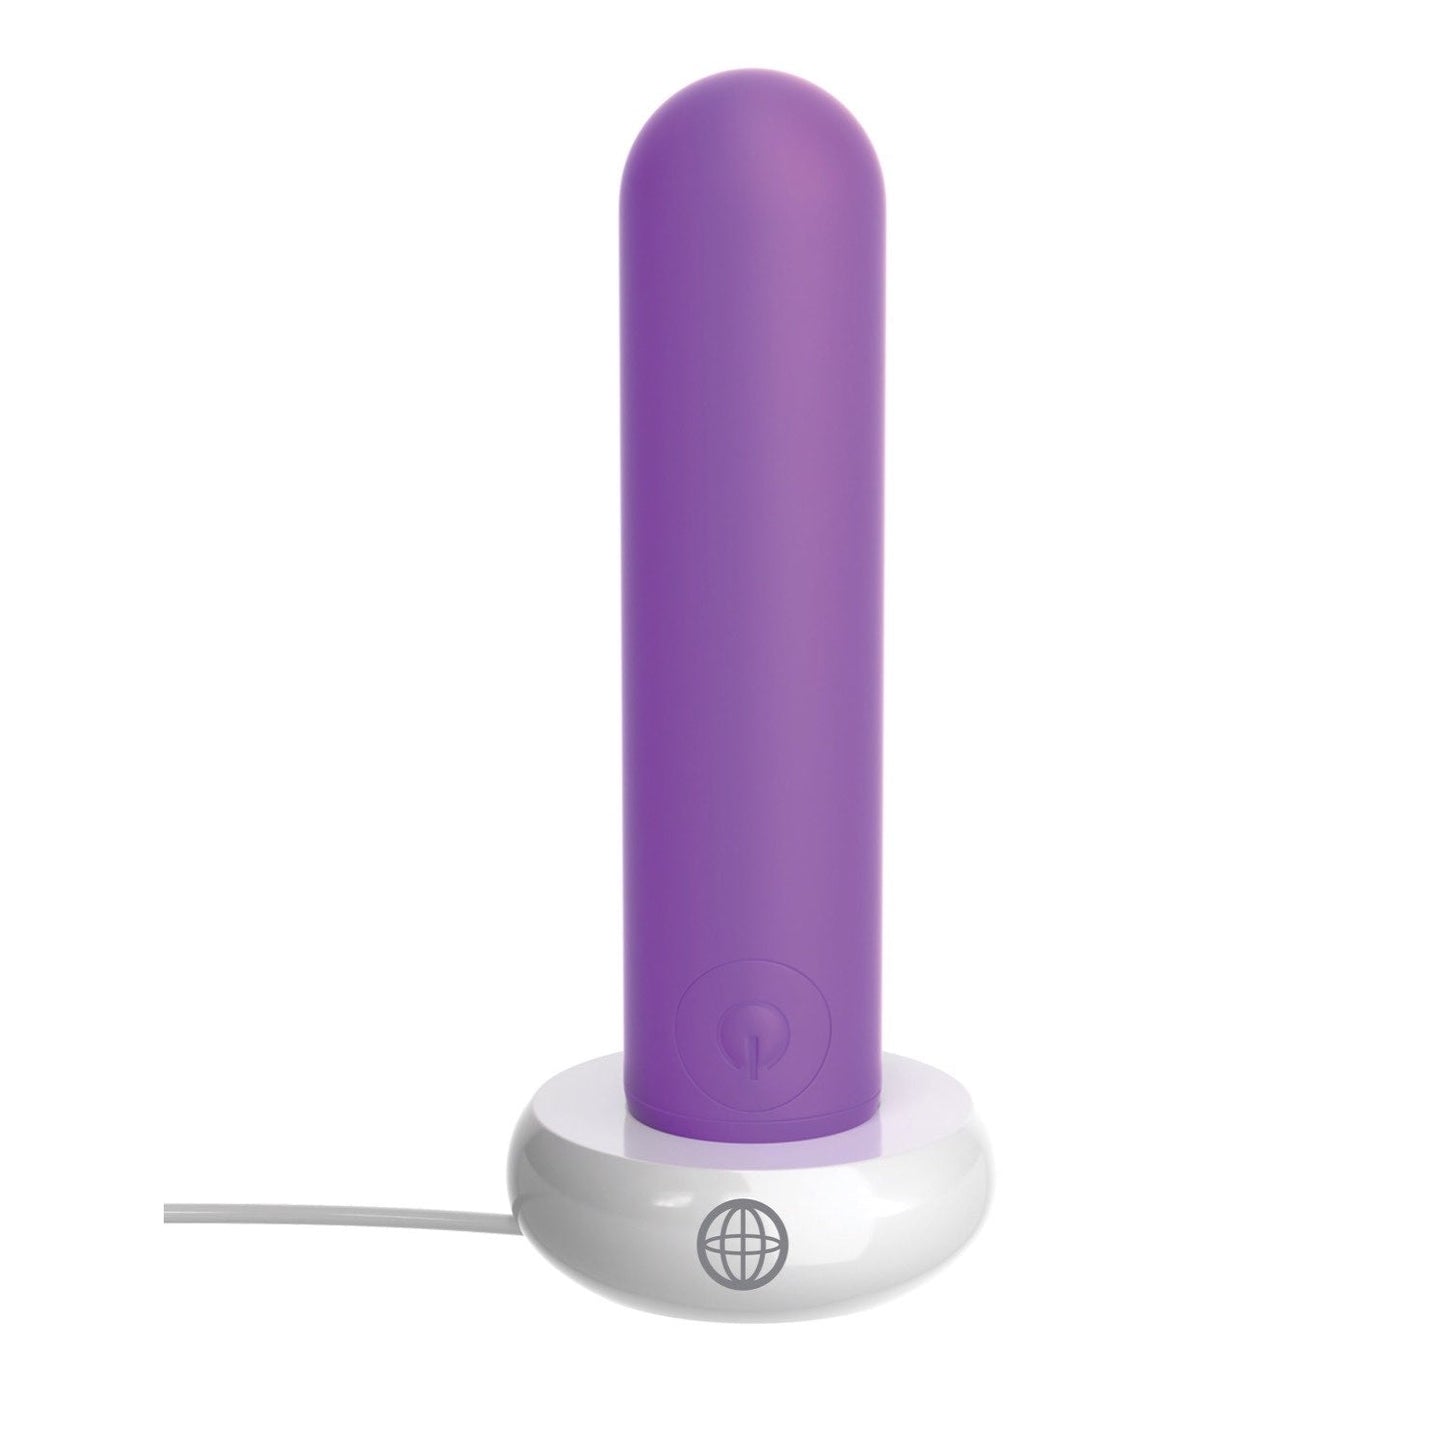 可充电子弹头 - 紫色 9.1 厘米（3.5 英寸）USB 可充电子弹头